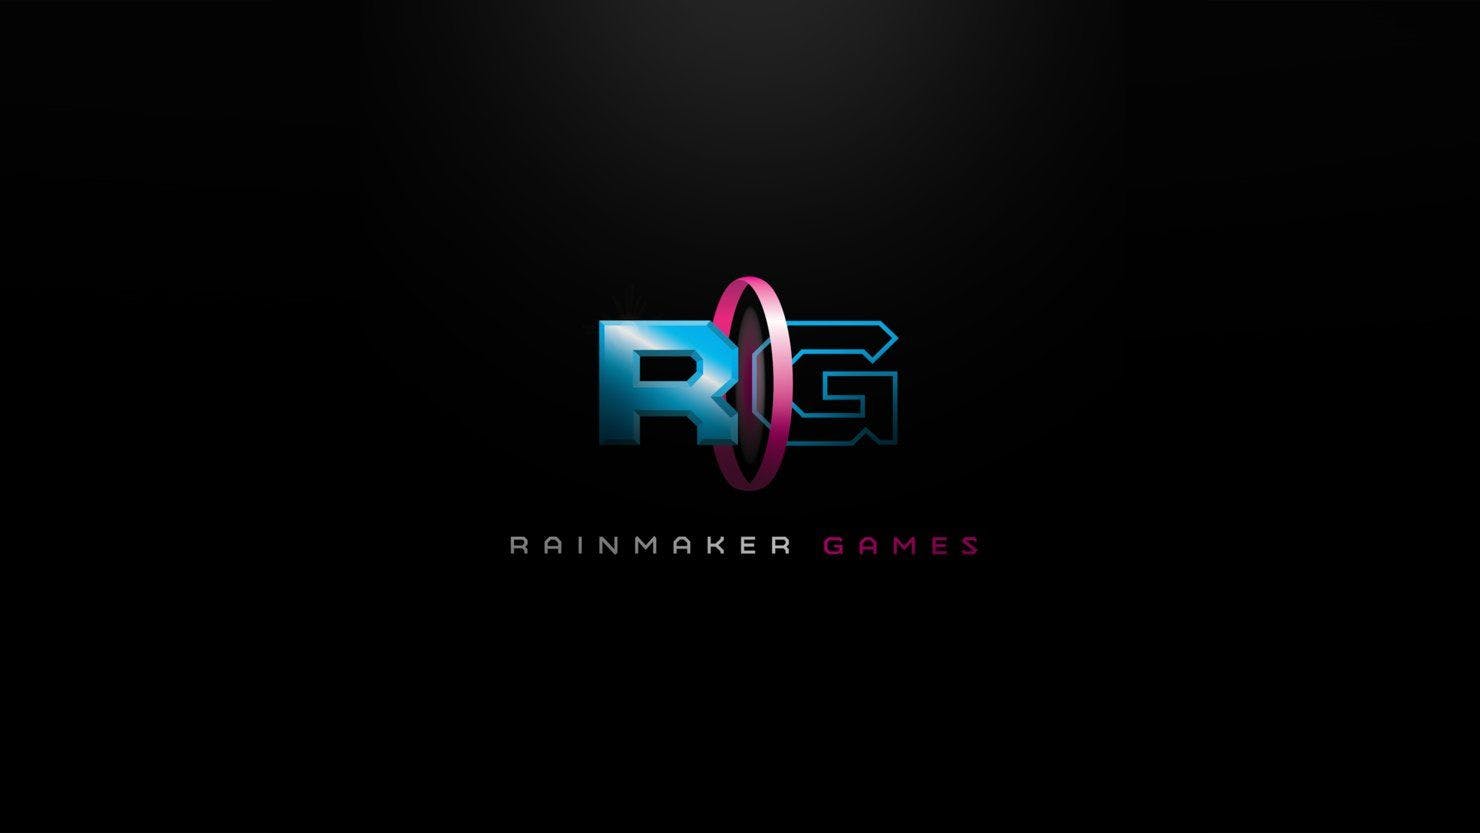 Rainmaker Games Image #1